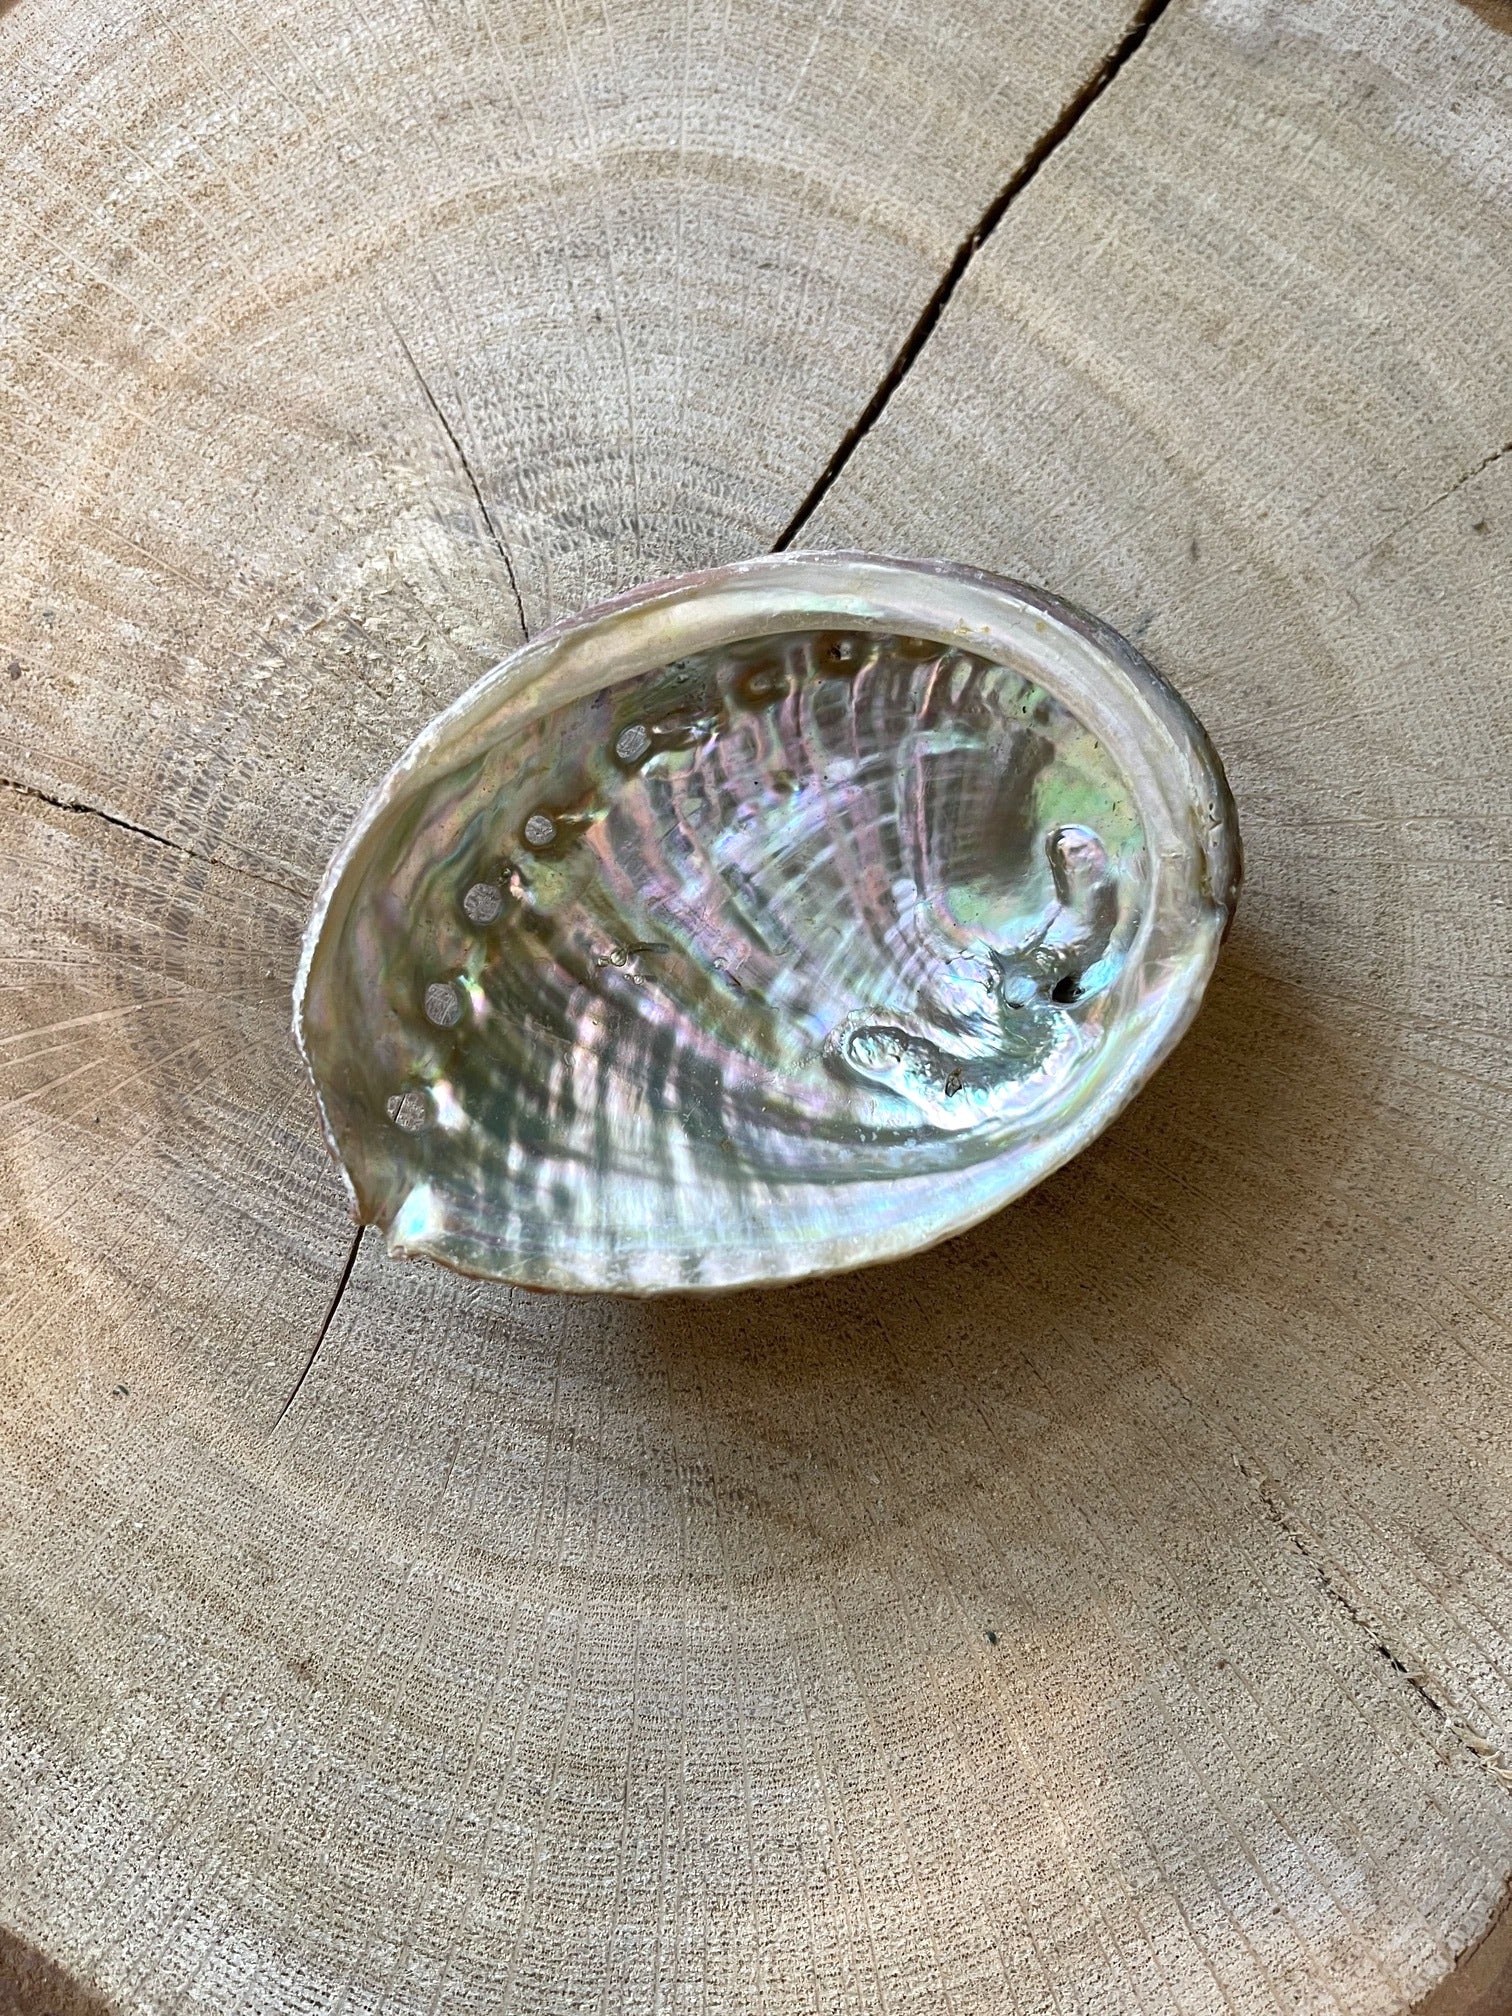 Abalone Muschel mit besonderem Glanz